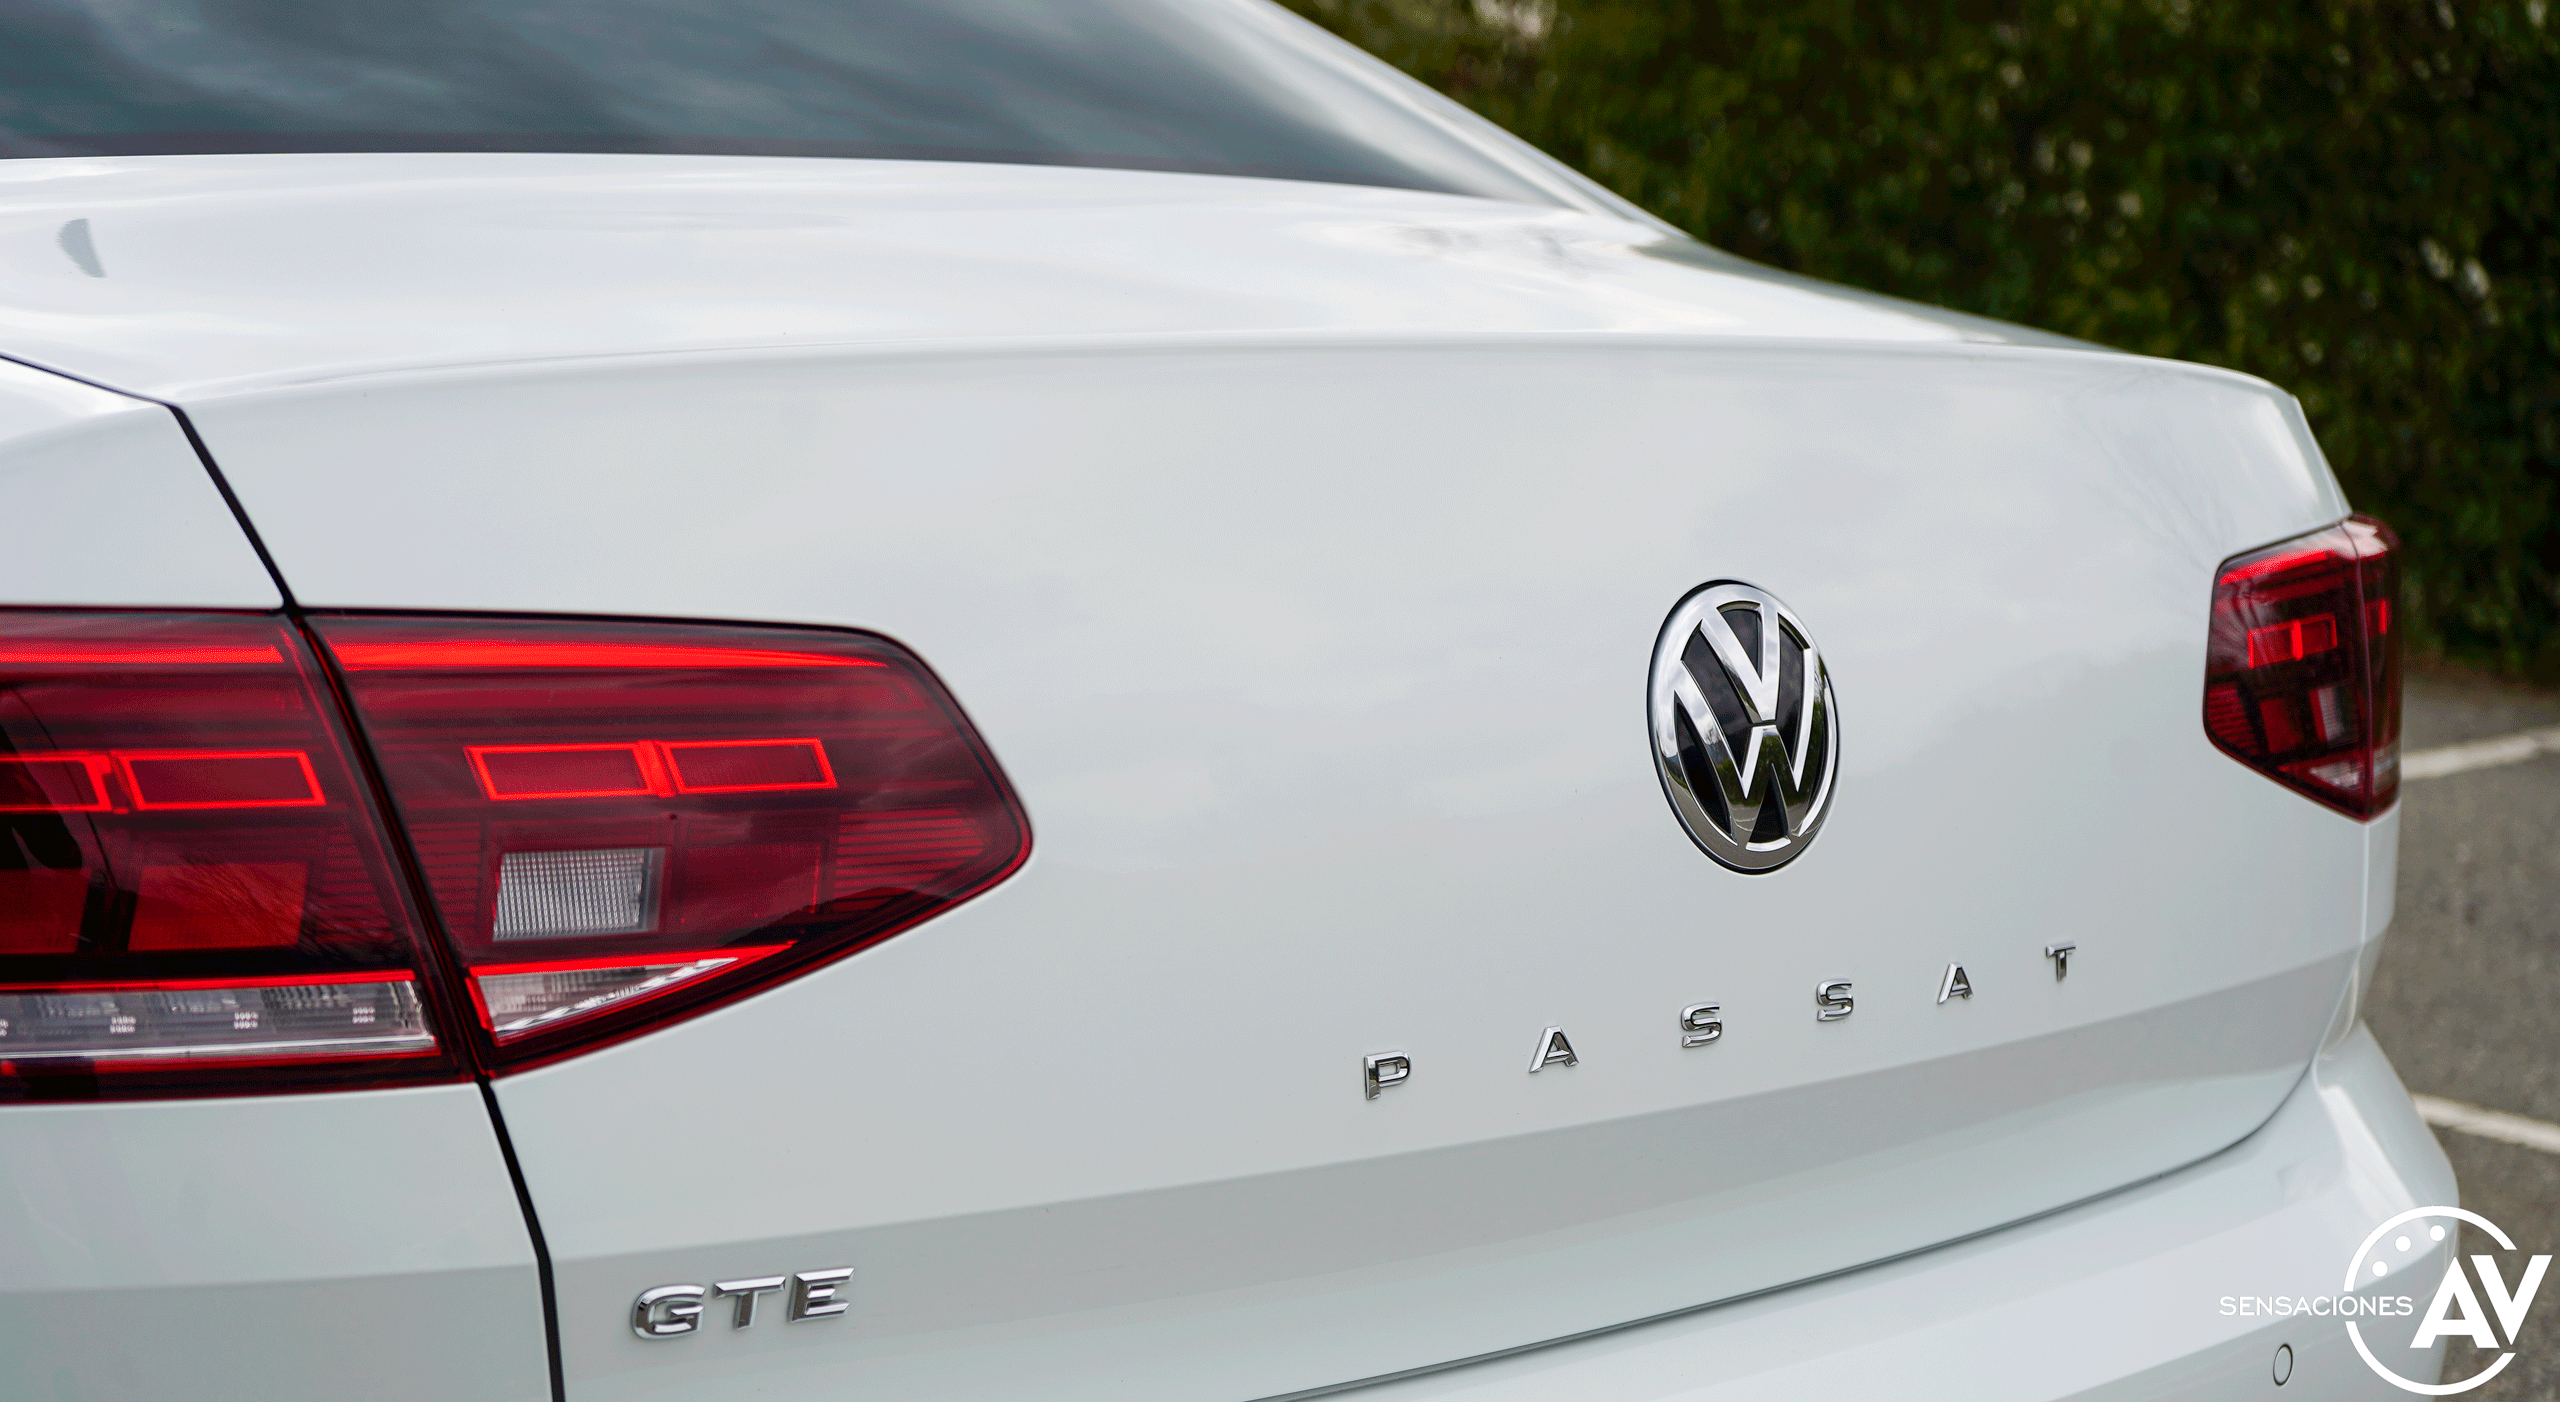 Anagrama PASSAT Volkswagen Passat GTE